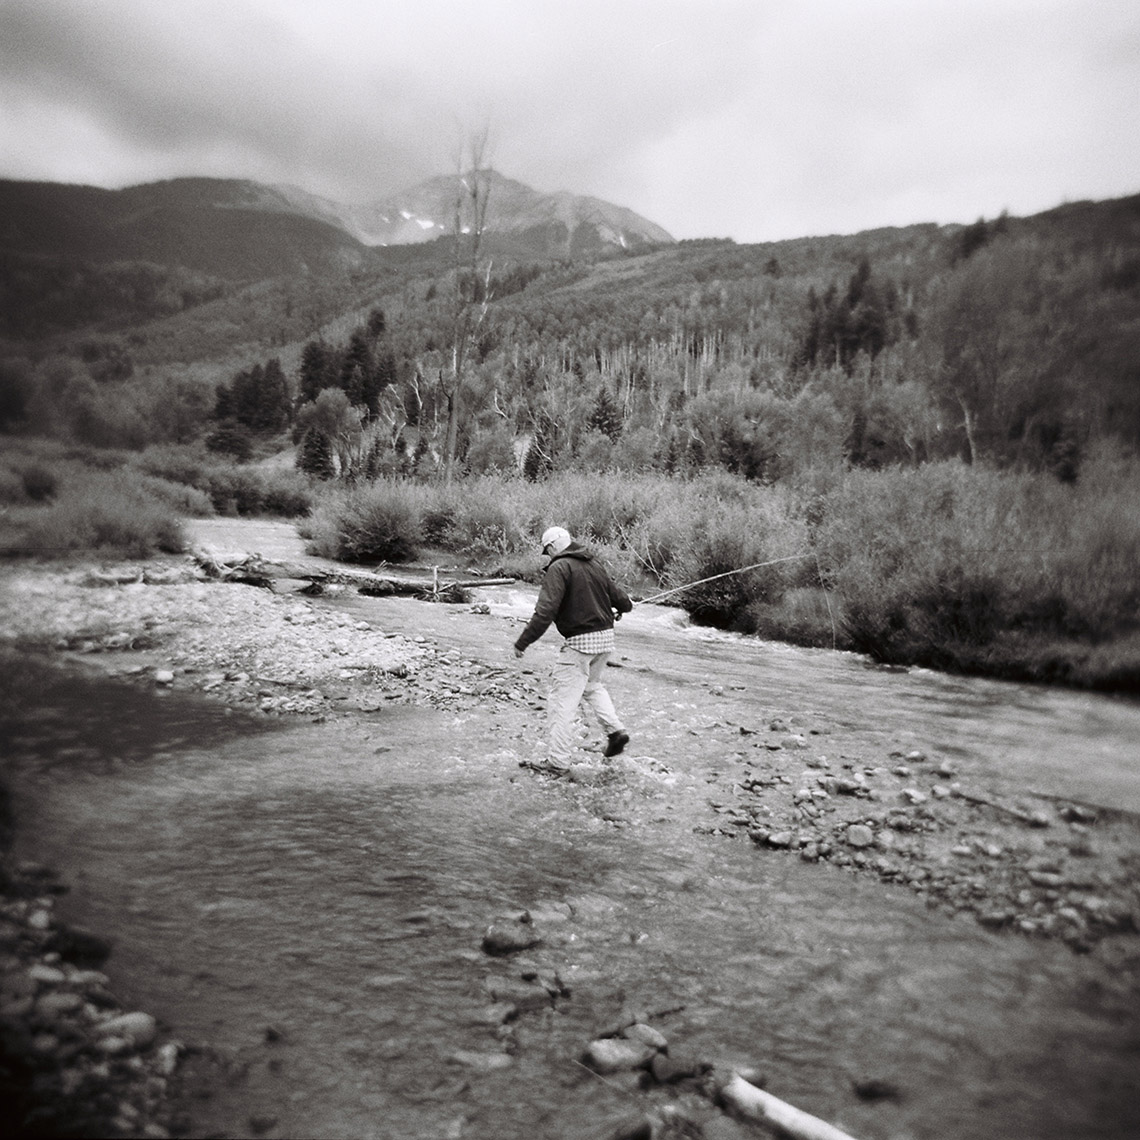 man fishing in mountains 